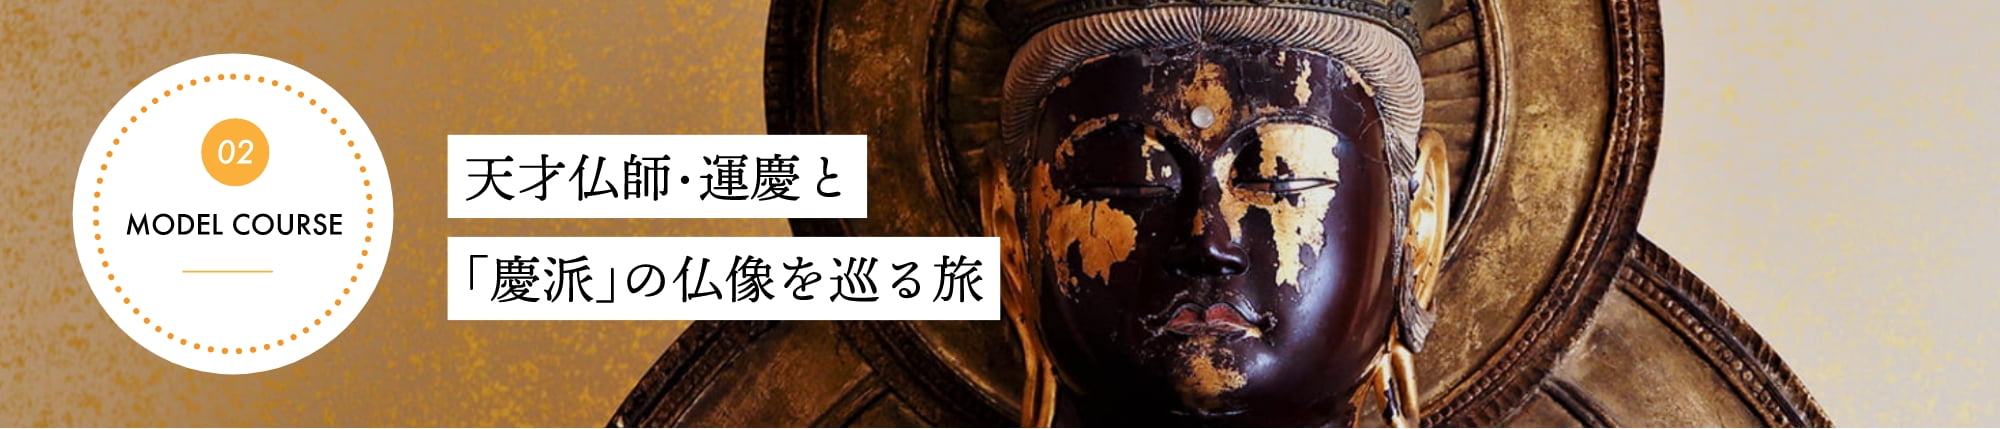 天才仏師・運慶と「慶派」の仏像を巡る旅